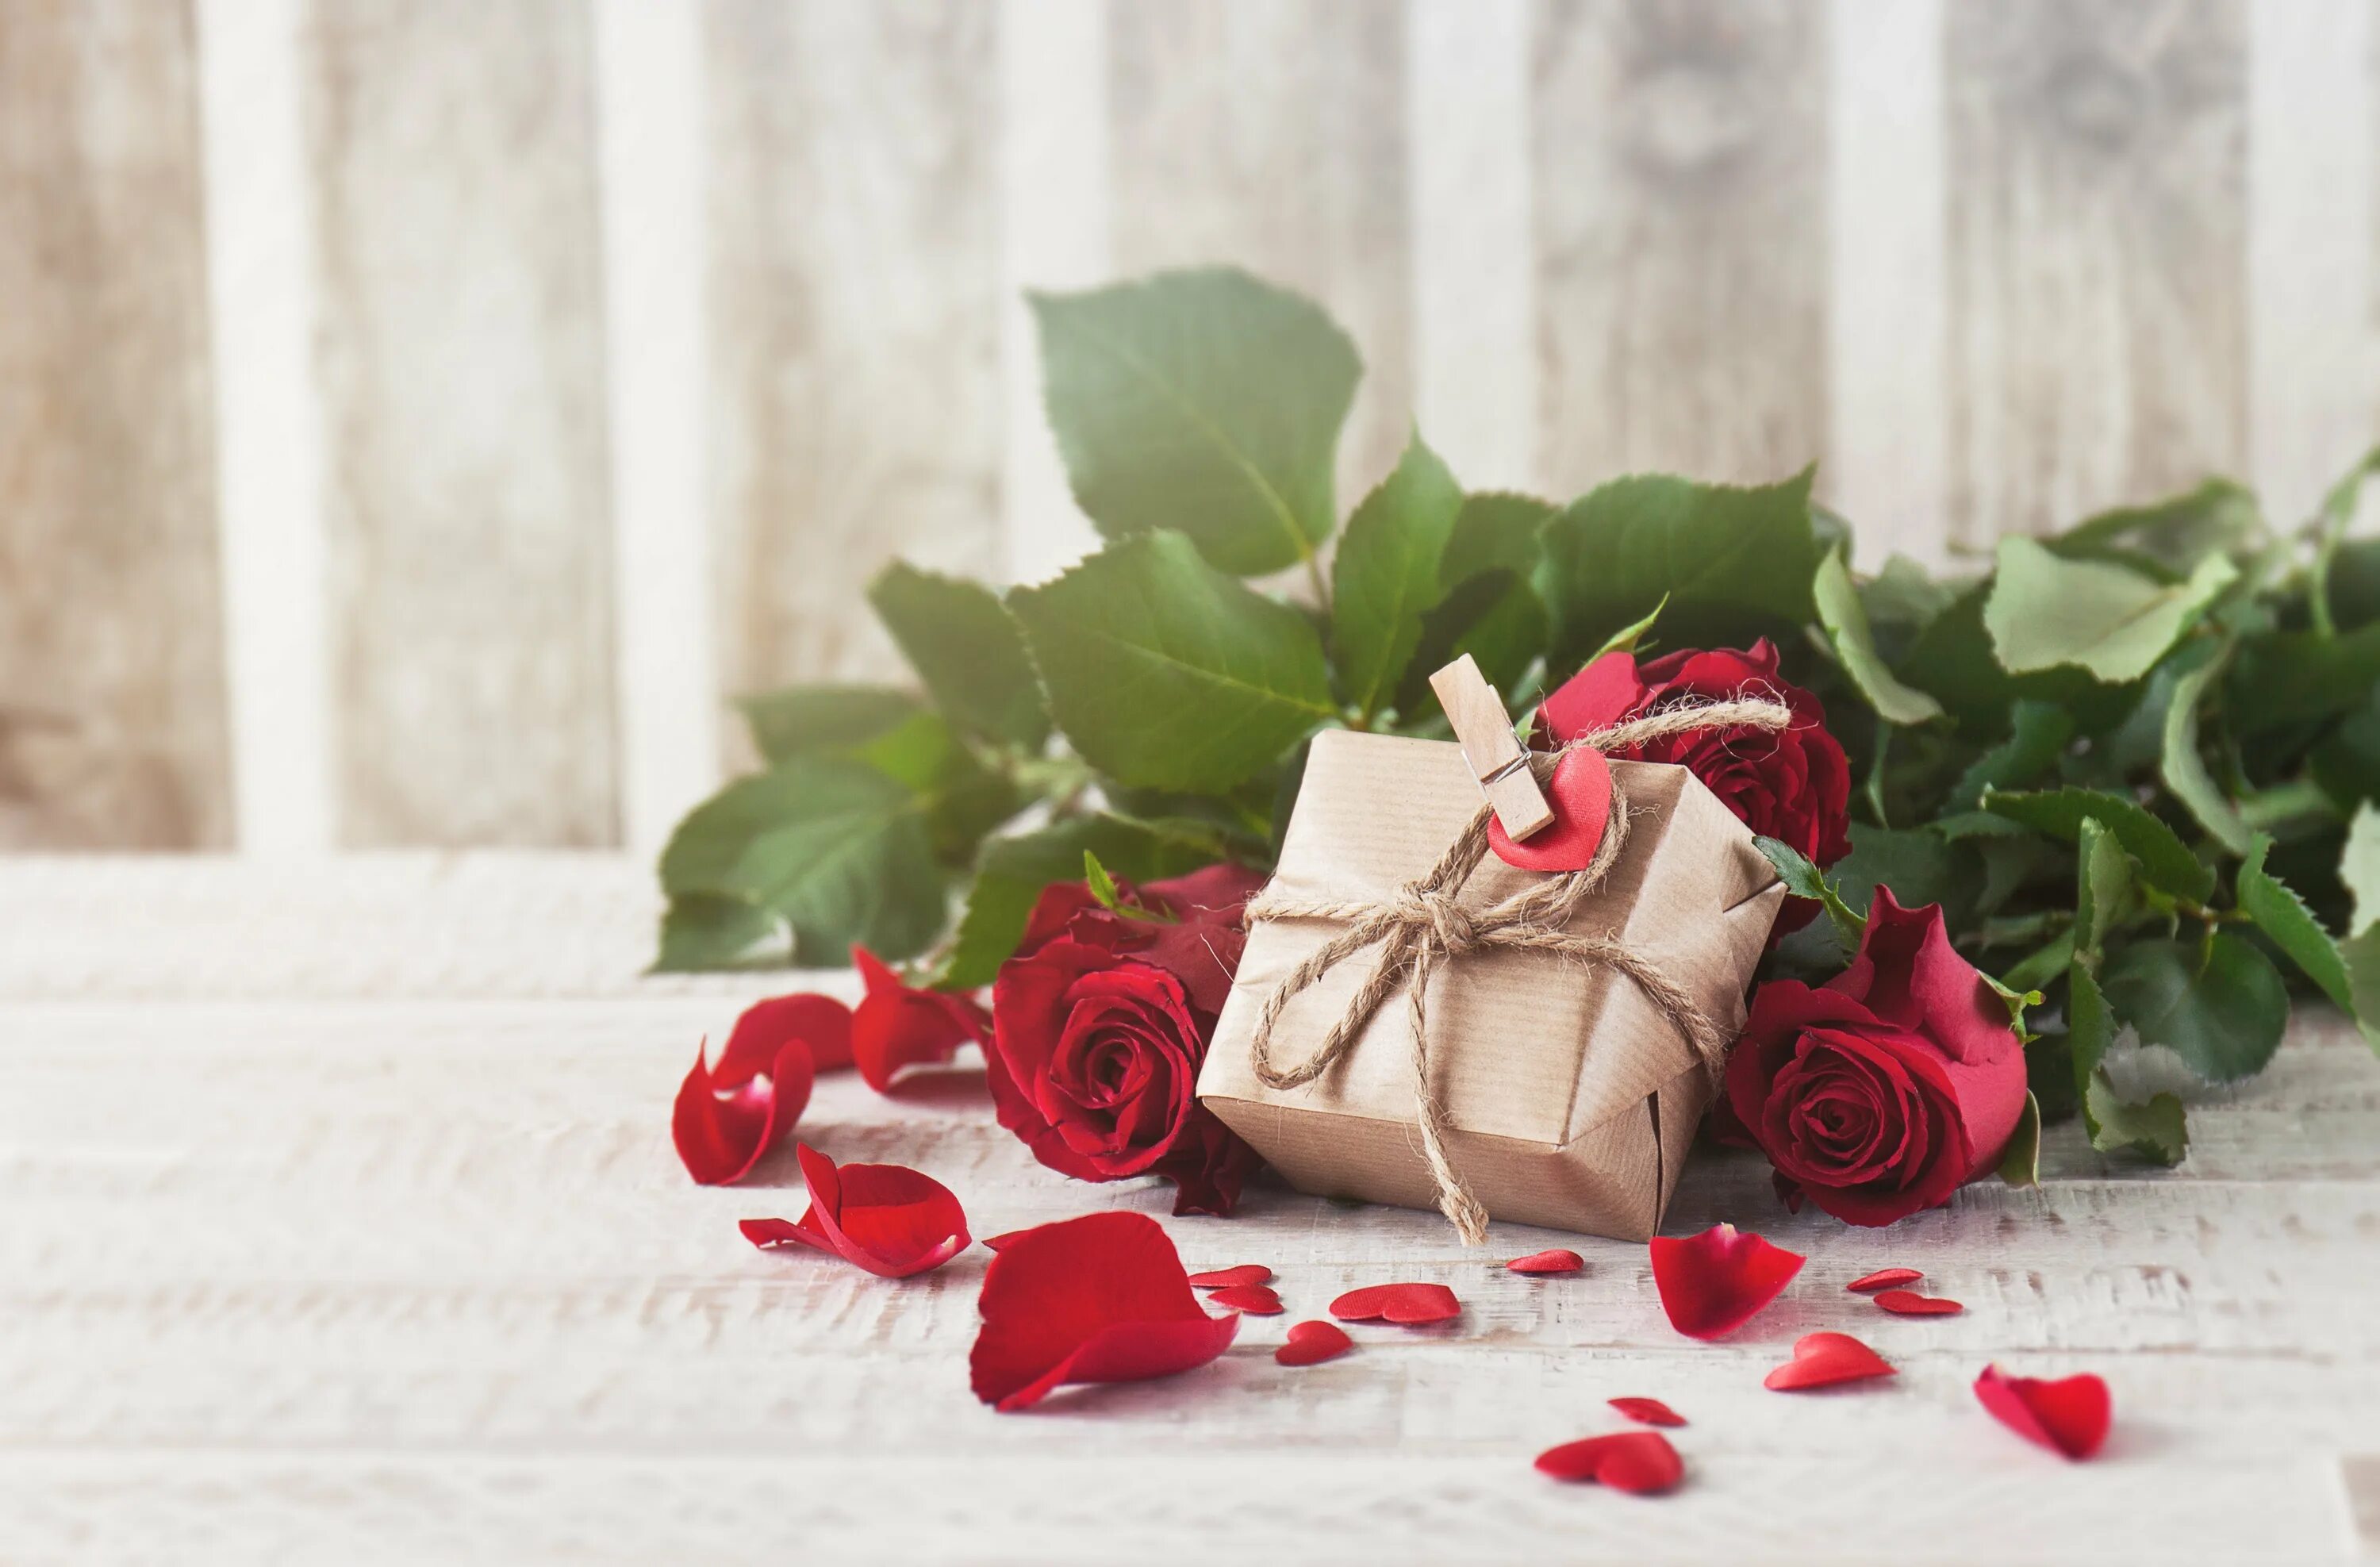 Цветы в подарок. Красивый букет в подарок. Подарок с цветами. Букет роз и подарок.